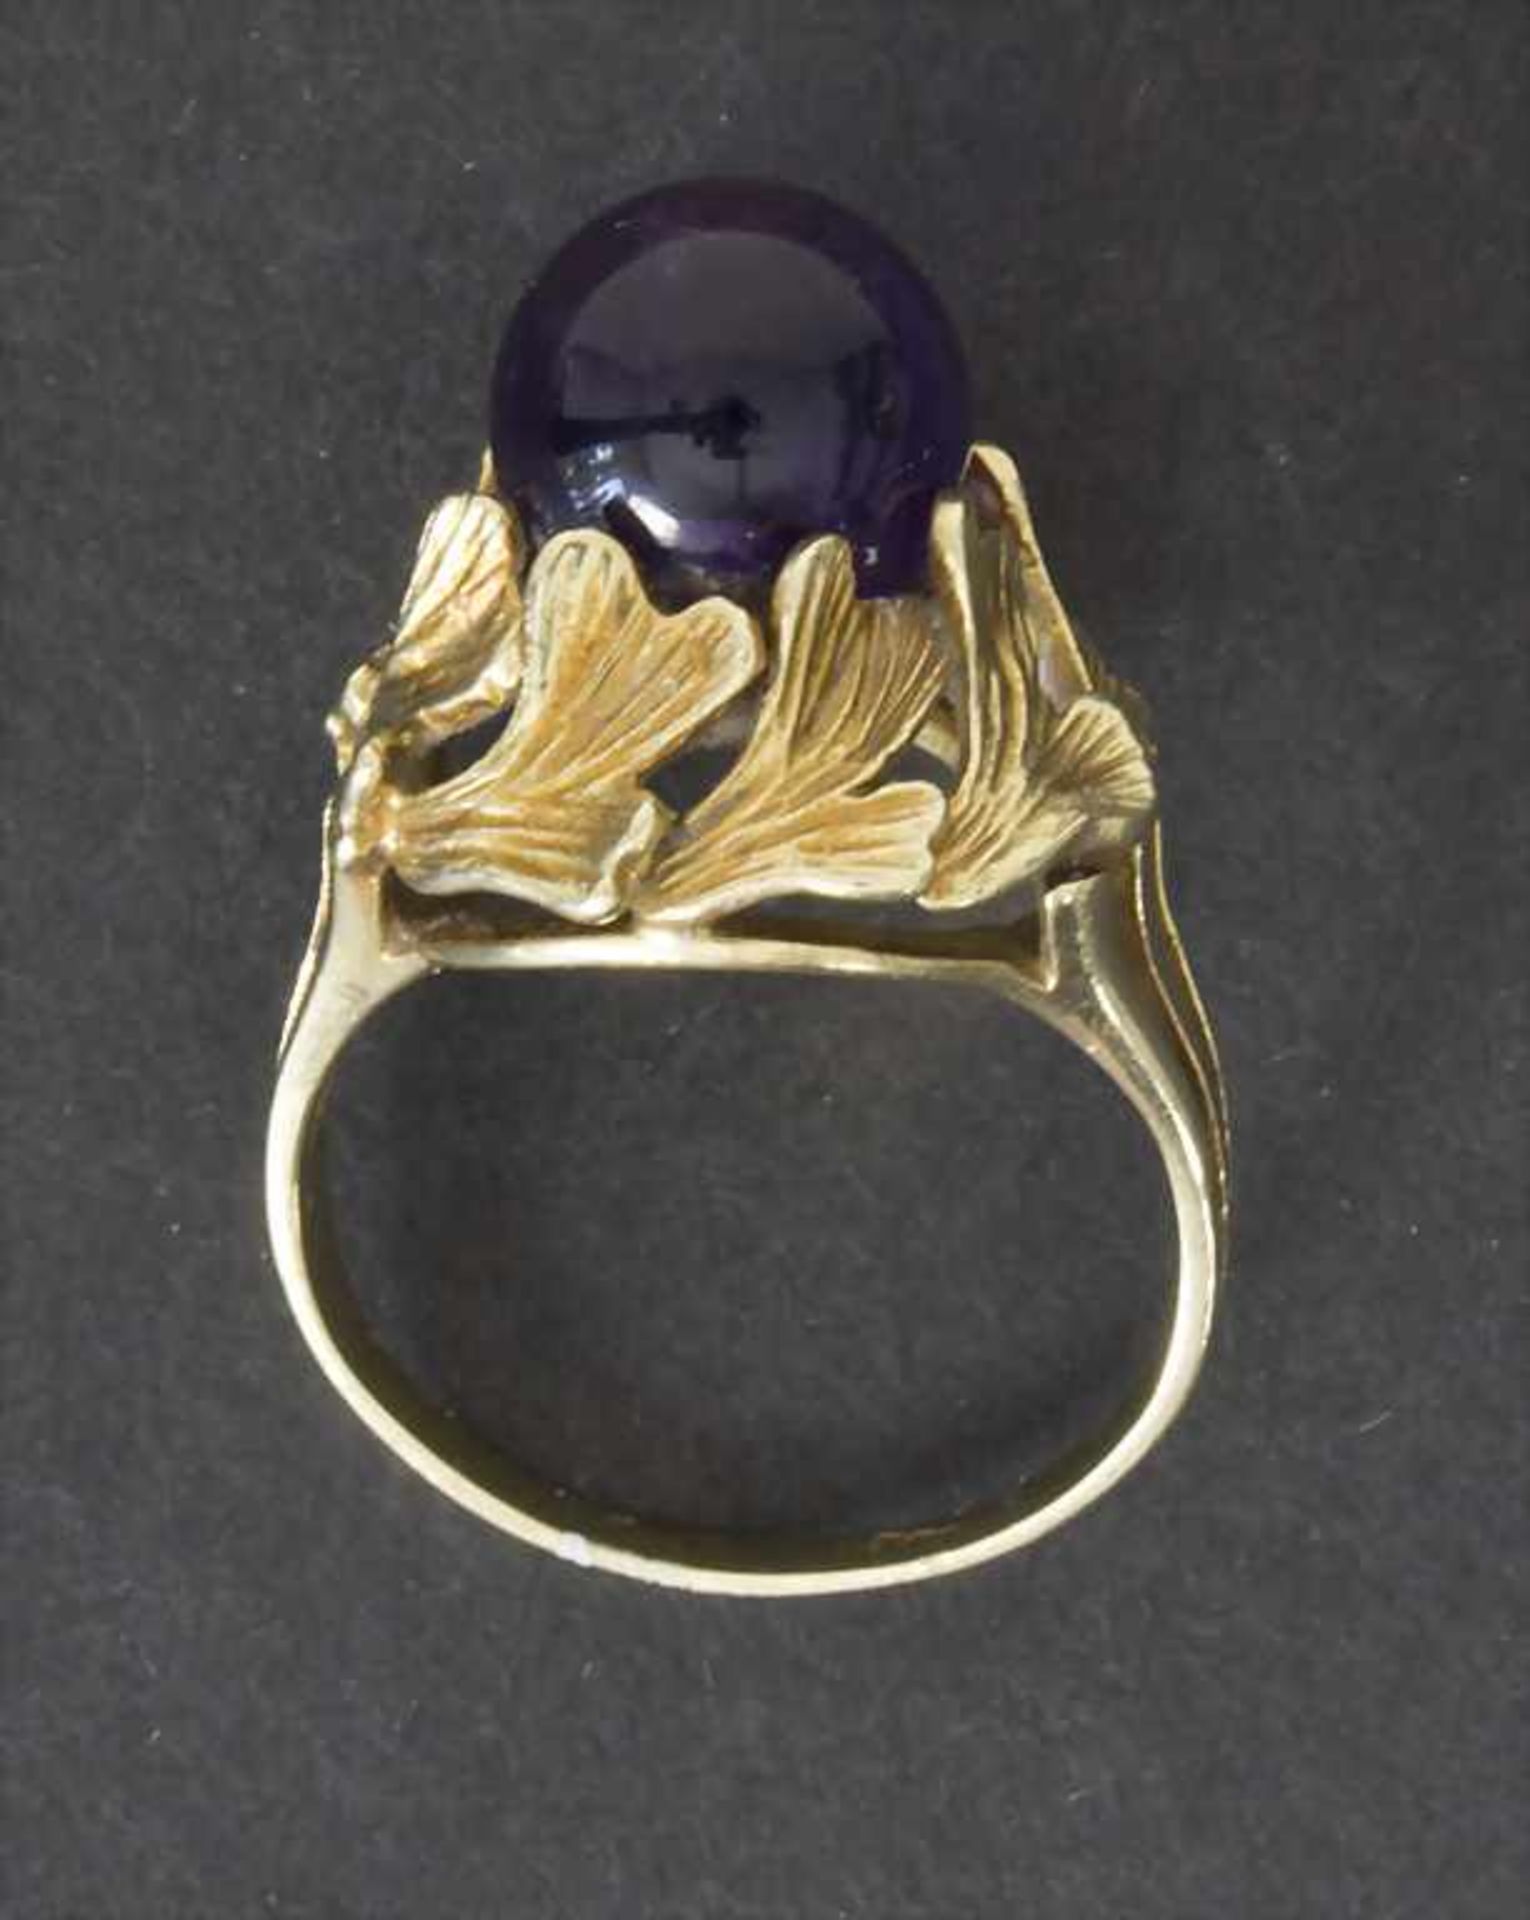 Damenring mit Amethyst / A ladies ring with amethystMaterial: Gold Au 585/000 14 Kt, Amethyst, - Bild 2 aus 2